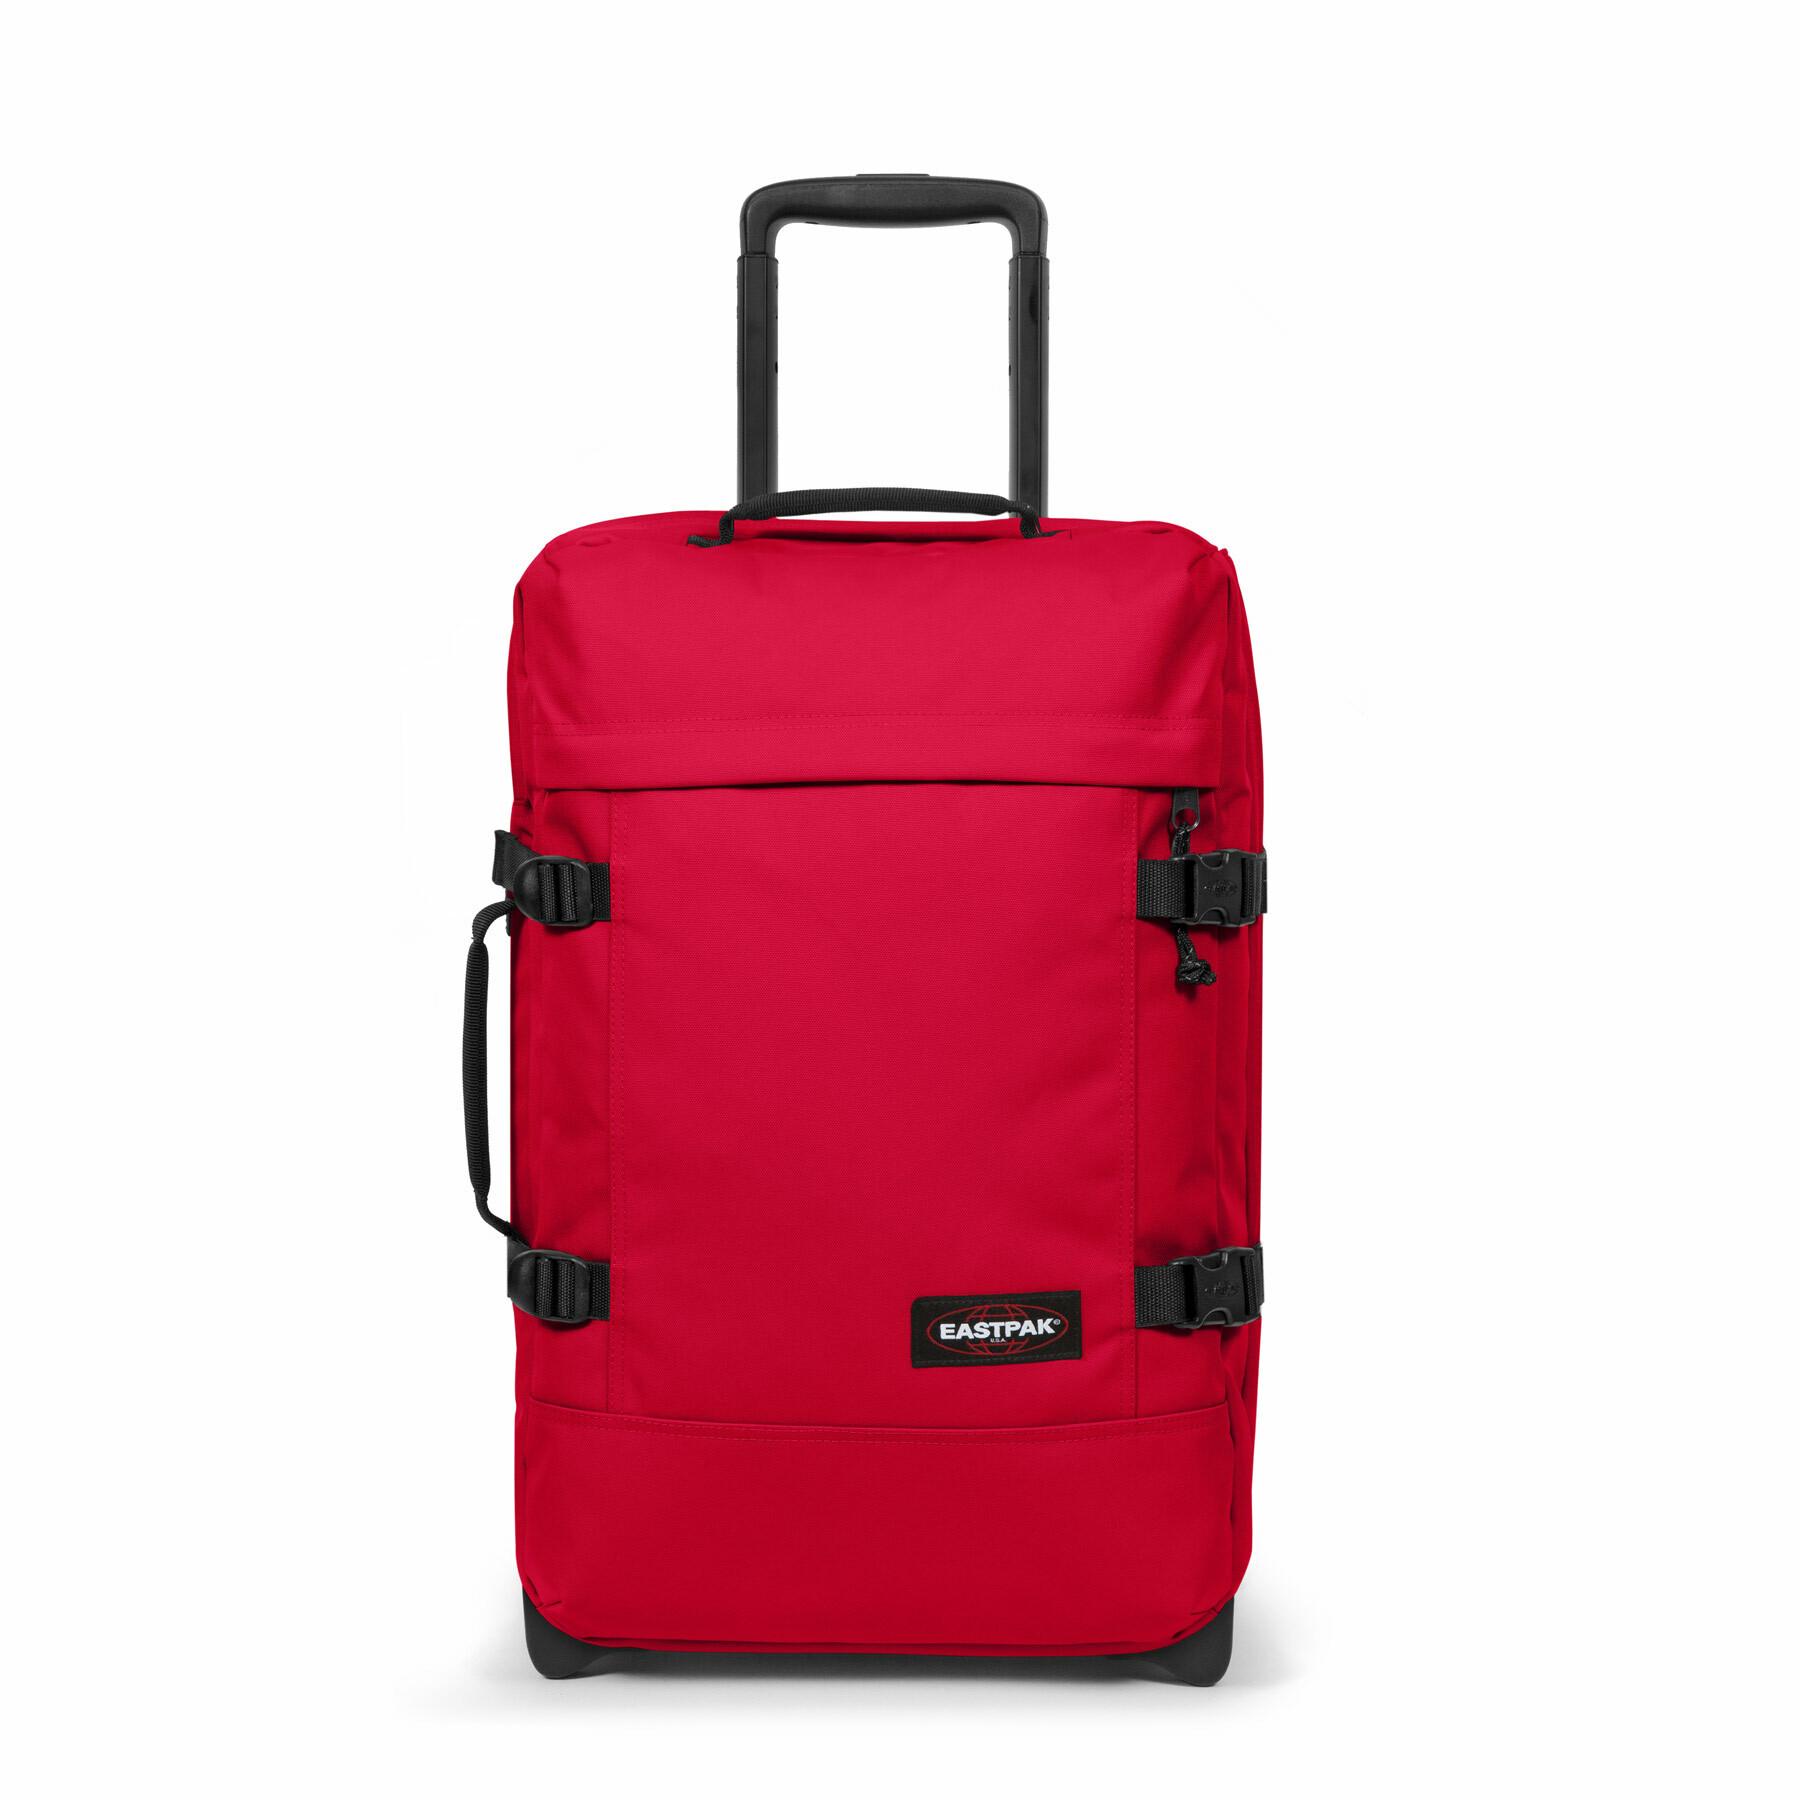 Diagnostiseren Illustreren Niet modieus Travel bag Eastpak Tranverz S (TSA) - Bags - Equipment